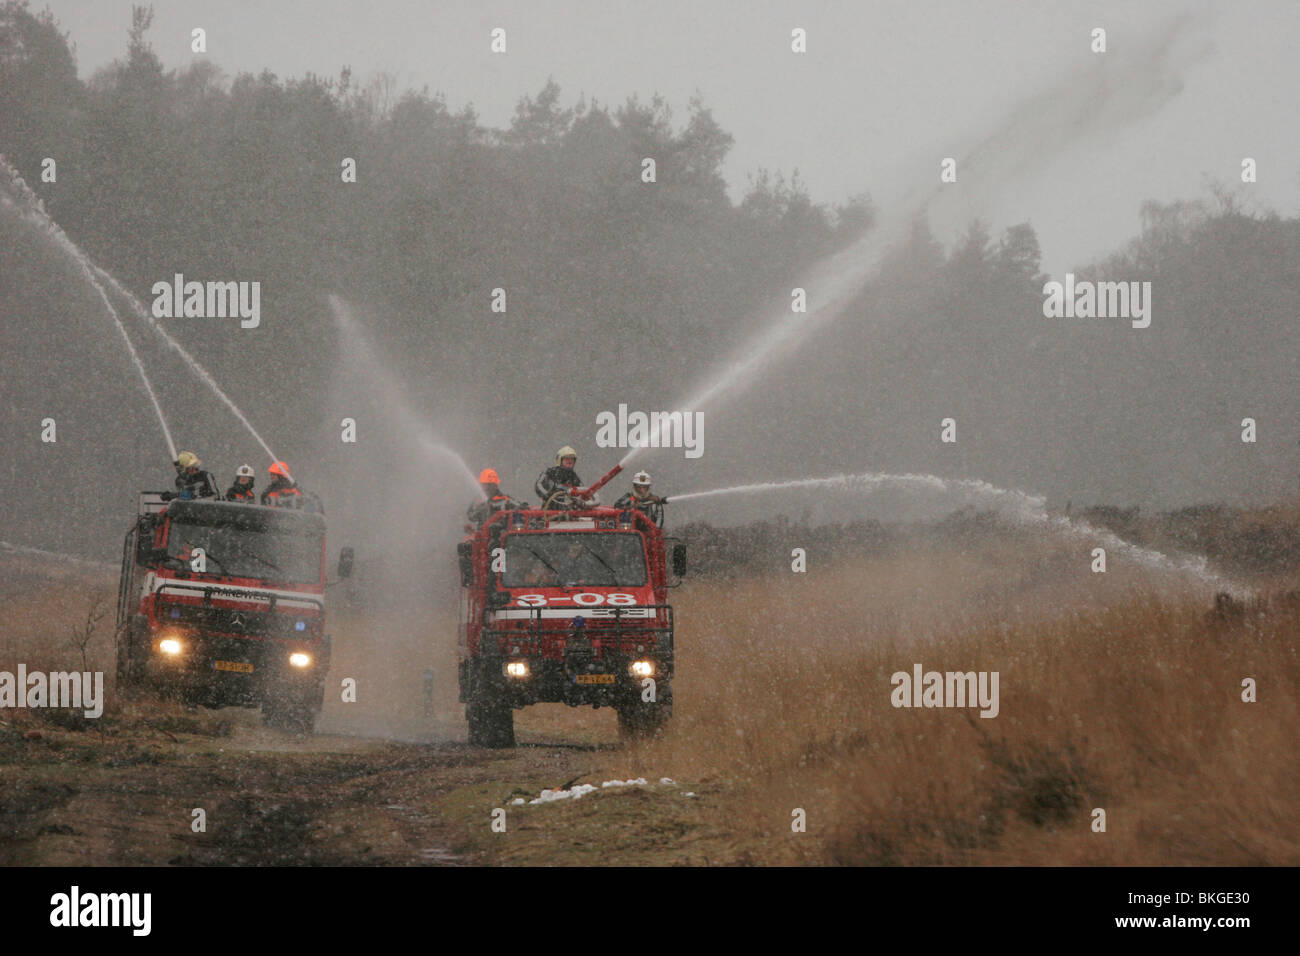 Brandweerkorps blust brand op de heide tijdens een sneeuwbui; Fire brigade extinguishing fire on a moorland Stock Photo